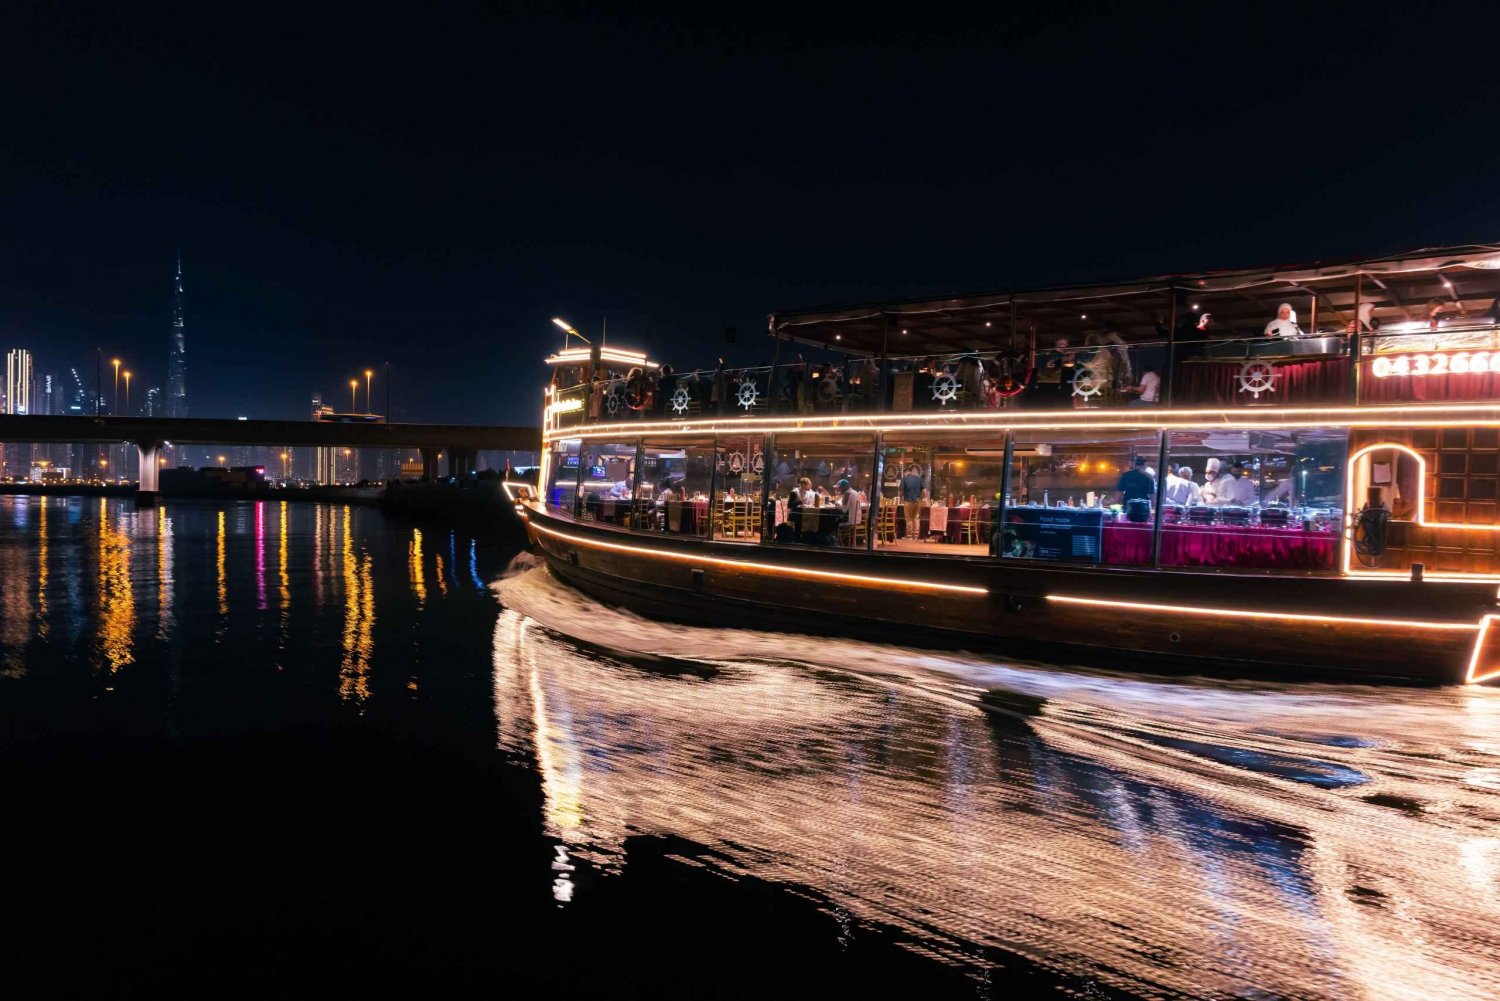 Dubai: Crociera di lusso con cena nel canale con trasferimenti opzionali